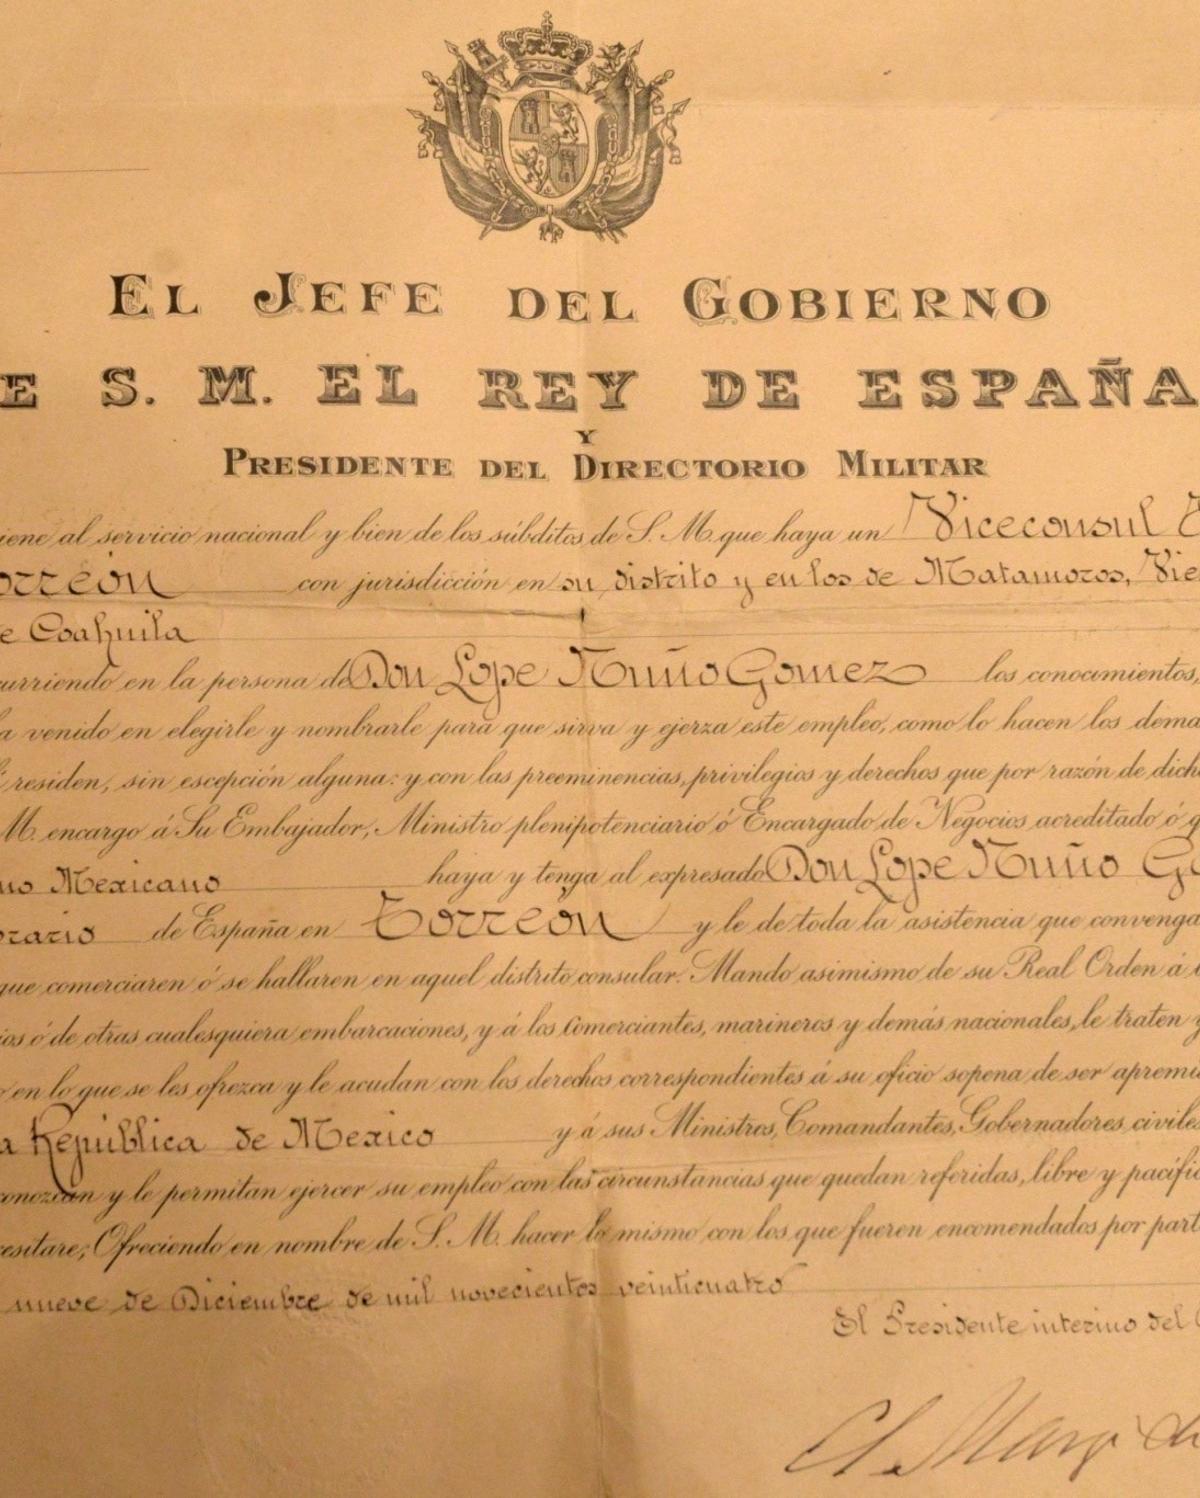 El nombramiento de Lope Nuño Garza como vicecónsul honorario en Torreón, México.